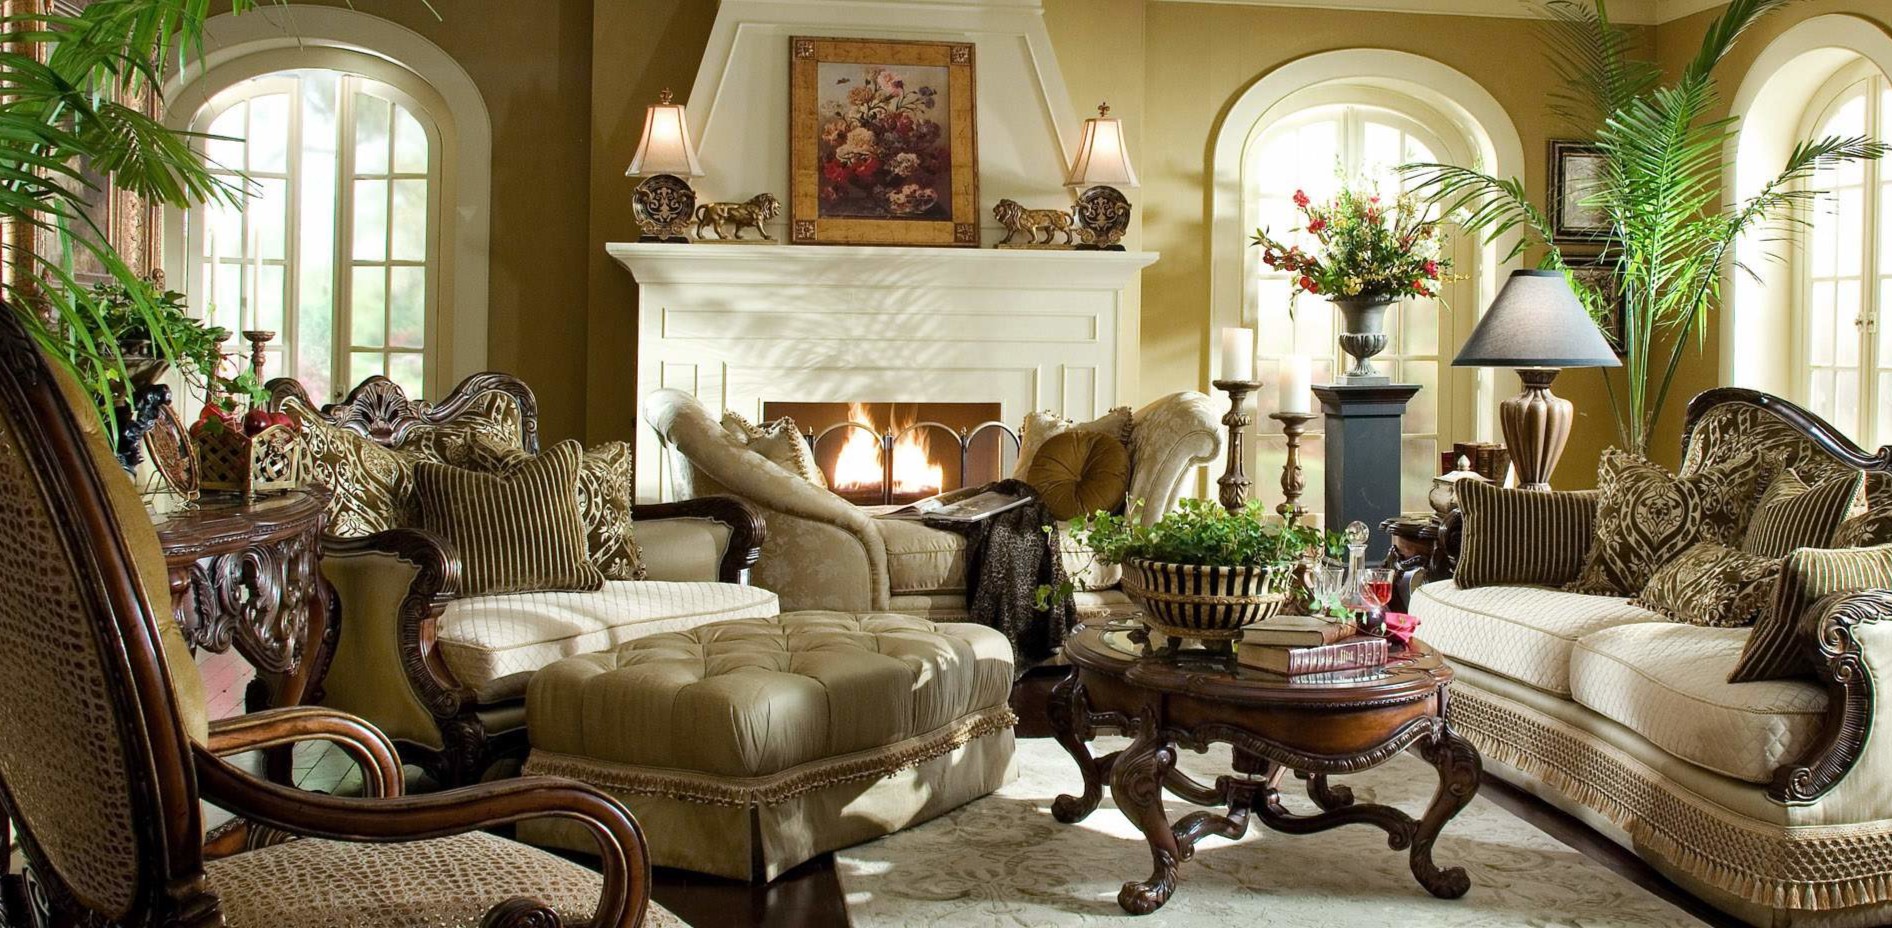 Мебель в классическом стиле можно разместить возле камина в гостиной